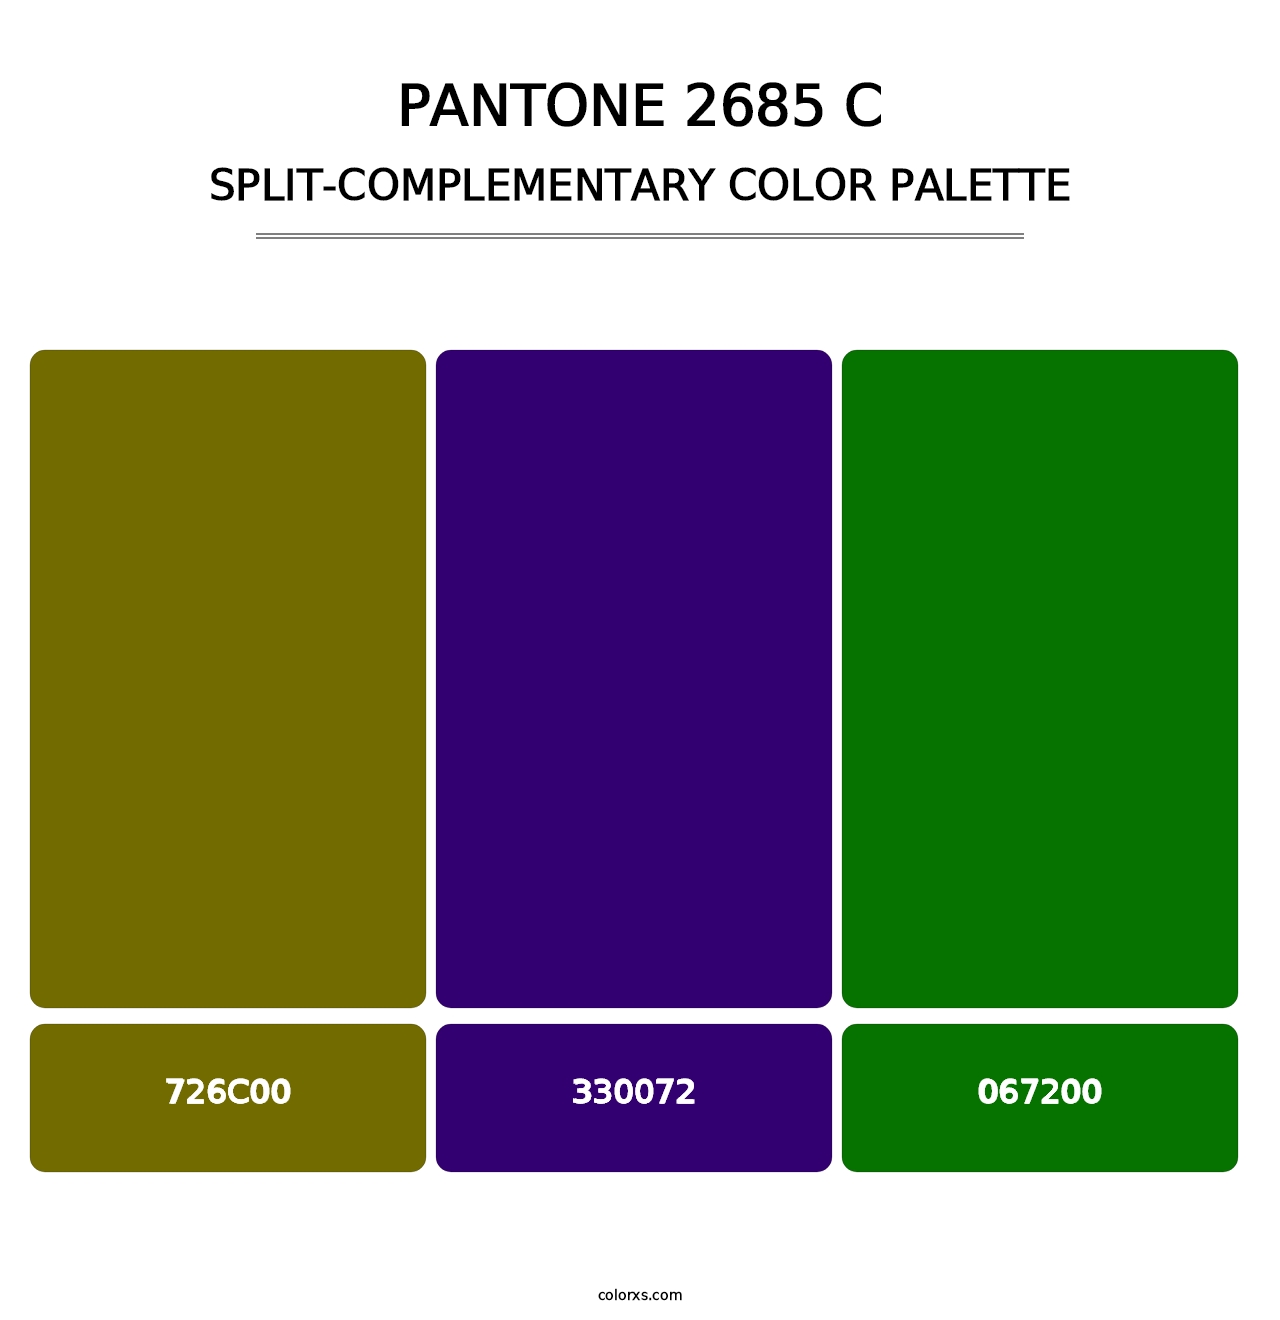 PANTONE 2685 C - Split-Complementary Color Palette